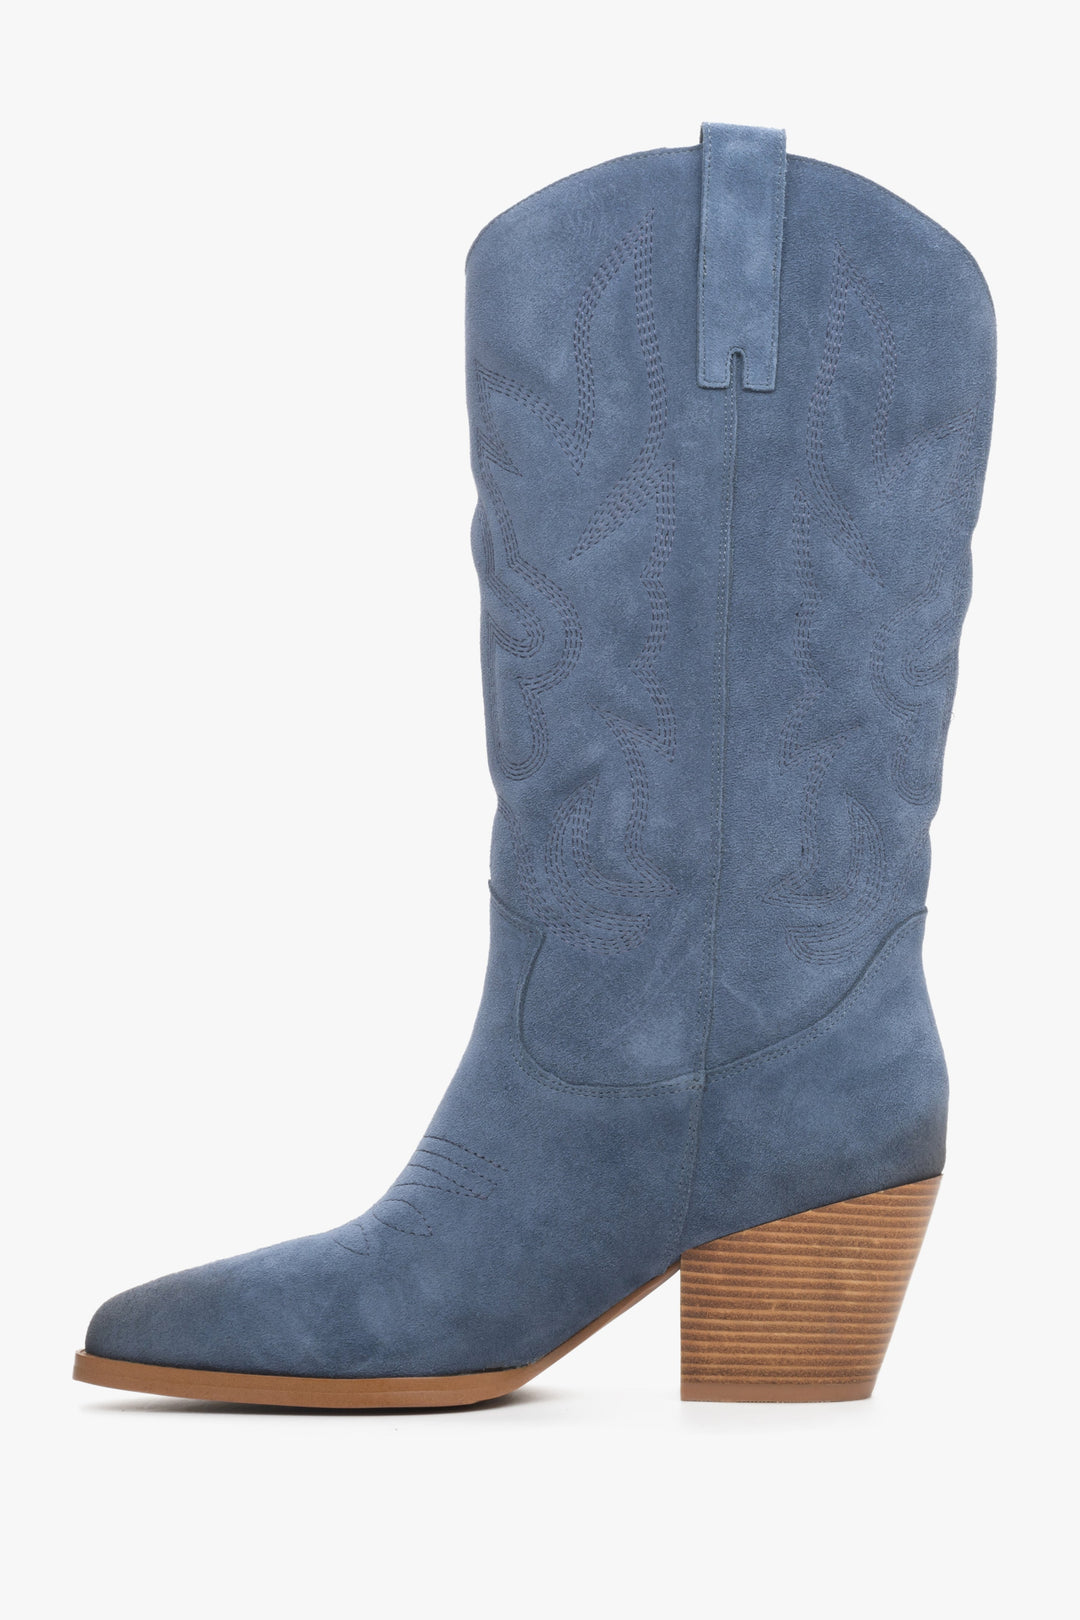 Velour blue women's cowboy boots by Estro - shoe profile.